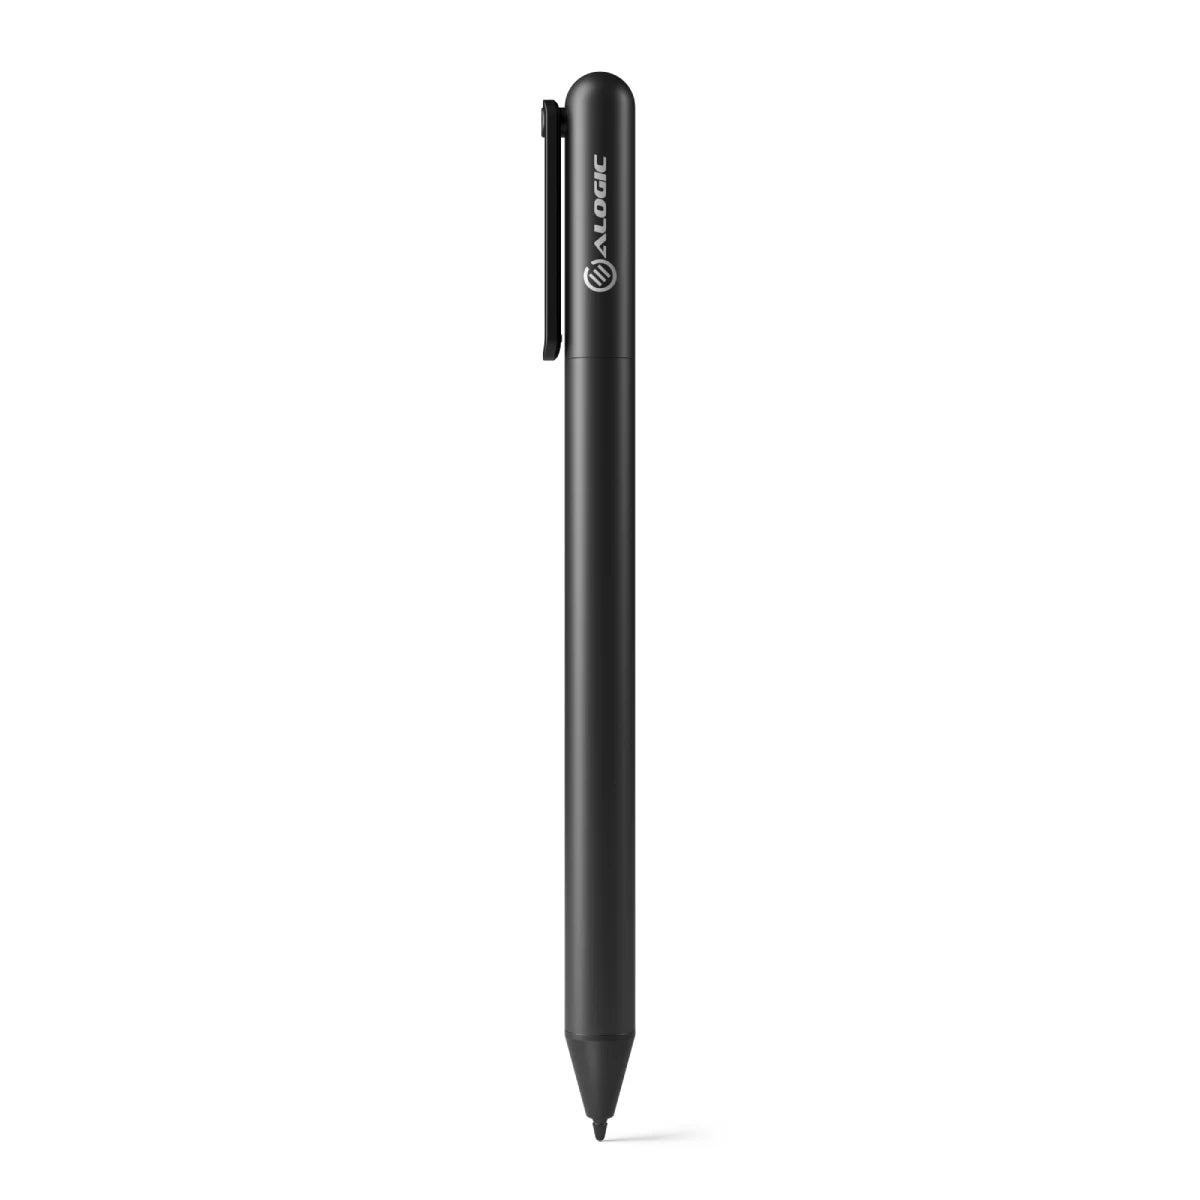 usi-active-stylus-pen_2